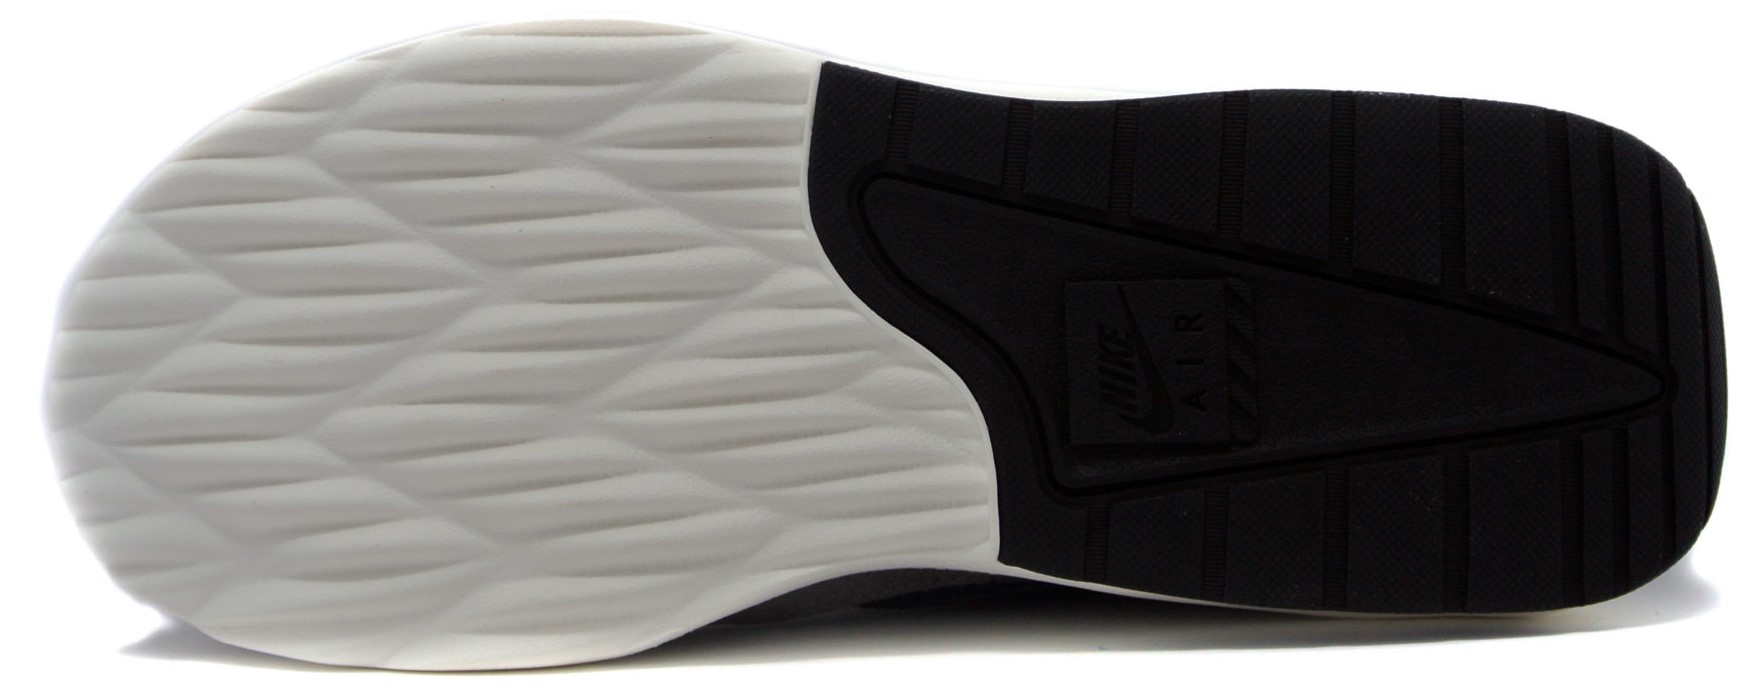 comodidad Ejecutante especificación Zapatillas Nike Air Max Nostalgic - Top4Fitness.es